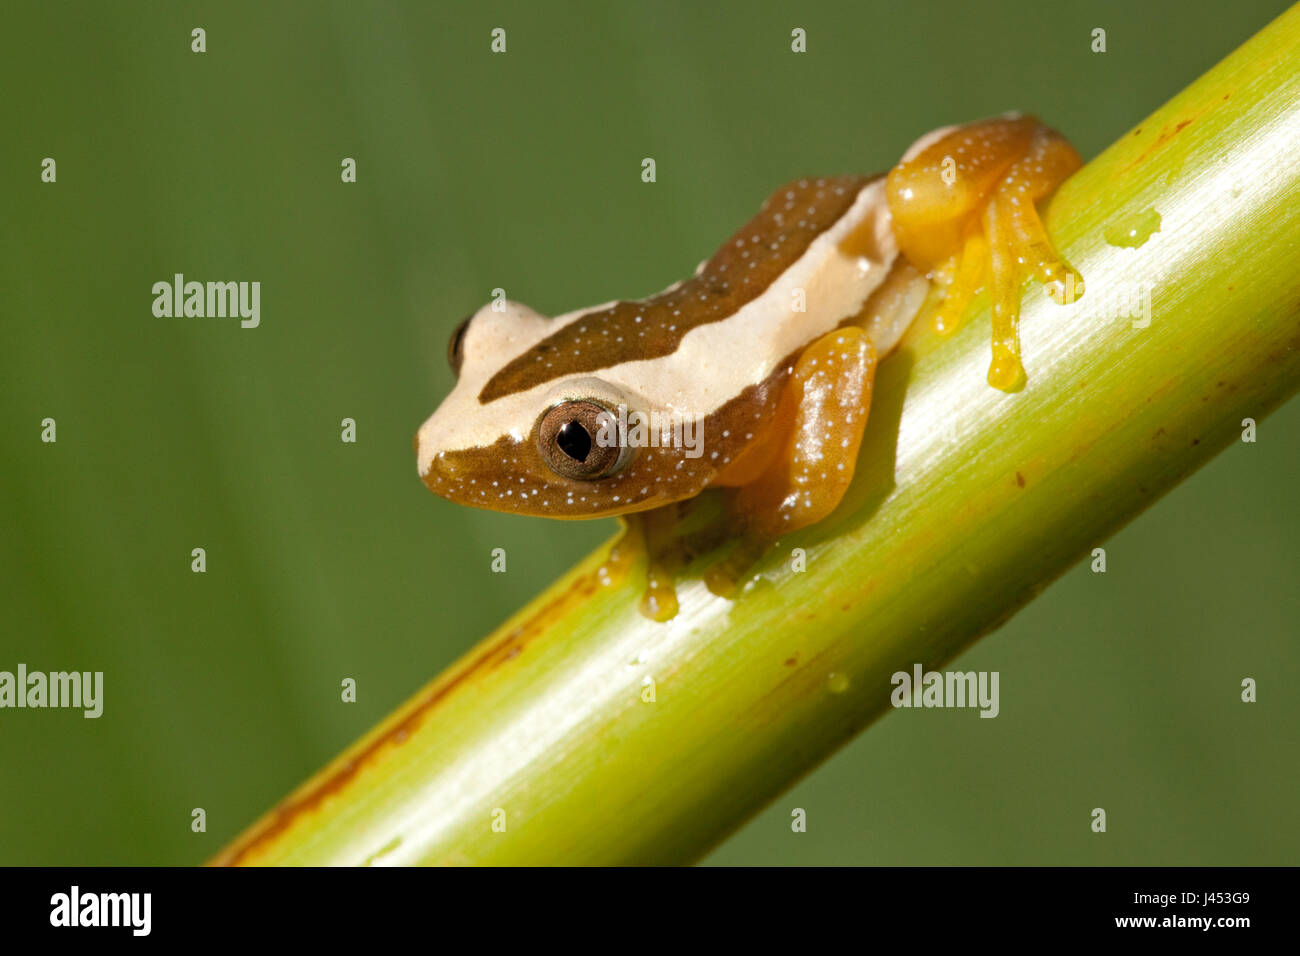 Foto van een Greater Leaf-folding frog; Photo of a Greater Leaf-folding frog; Stock Photo